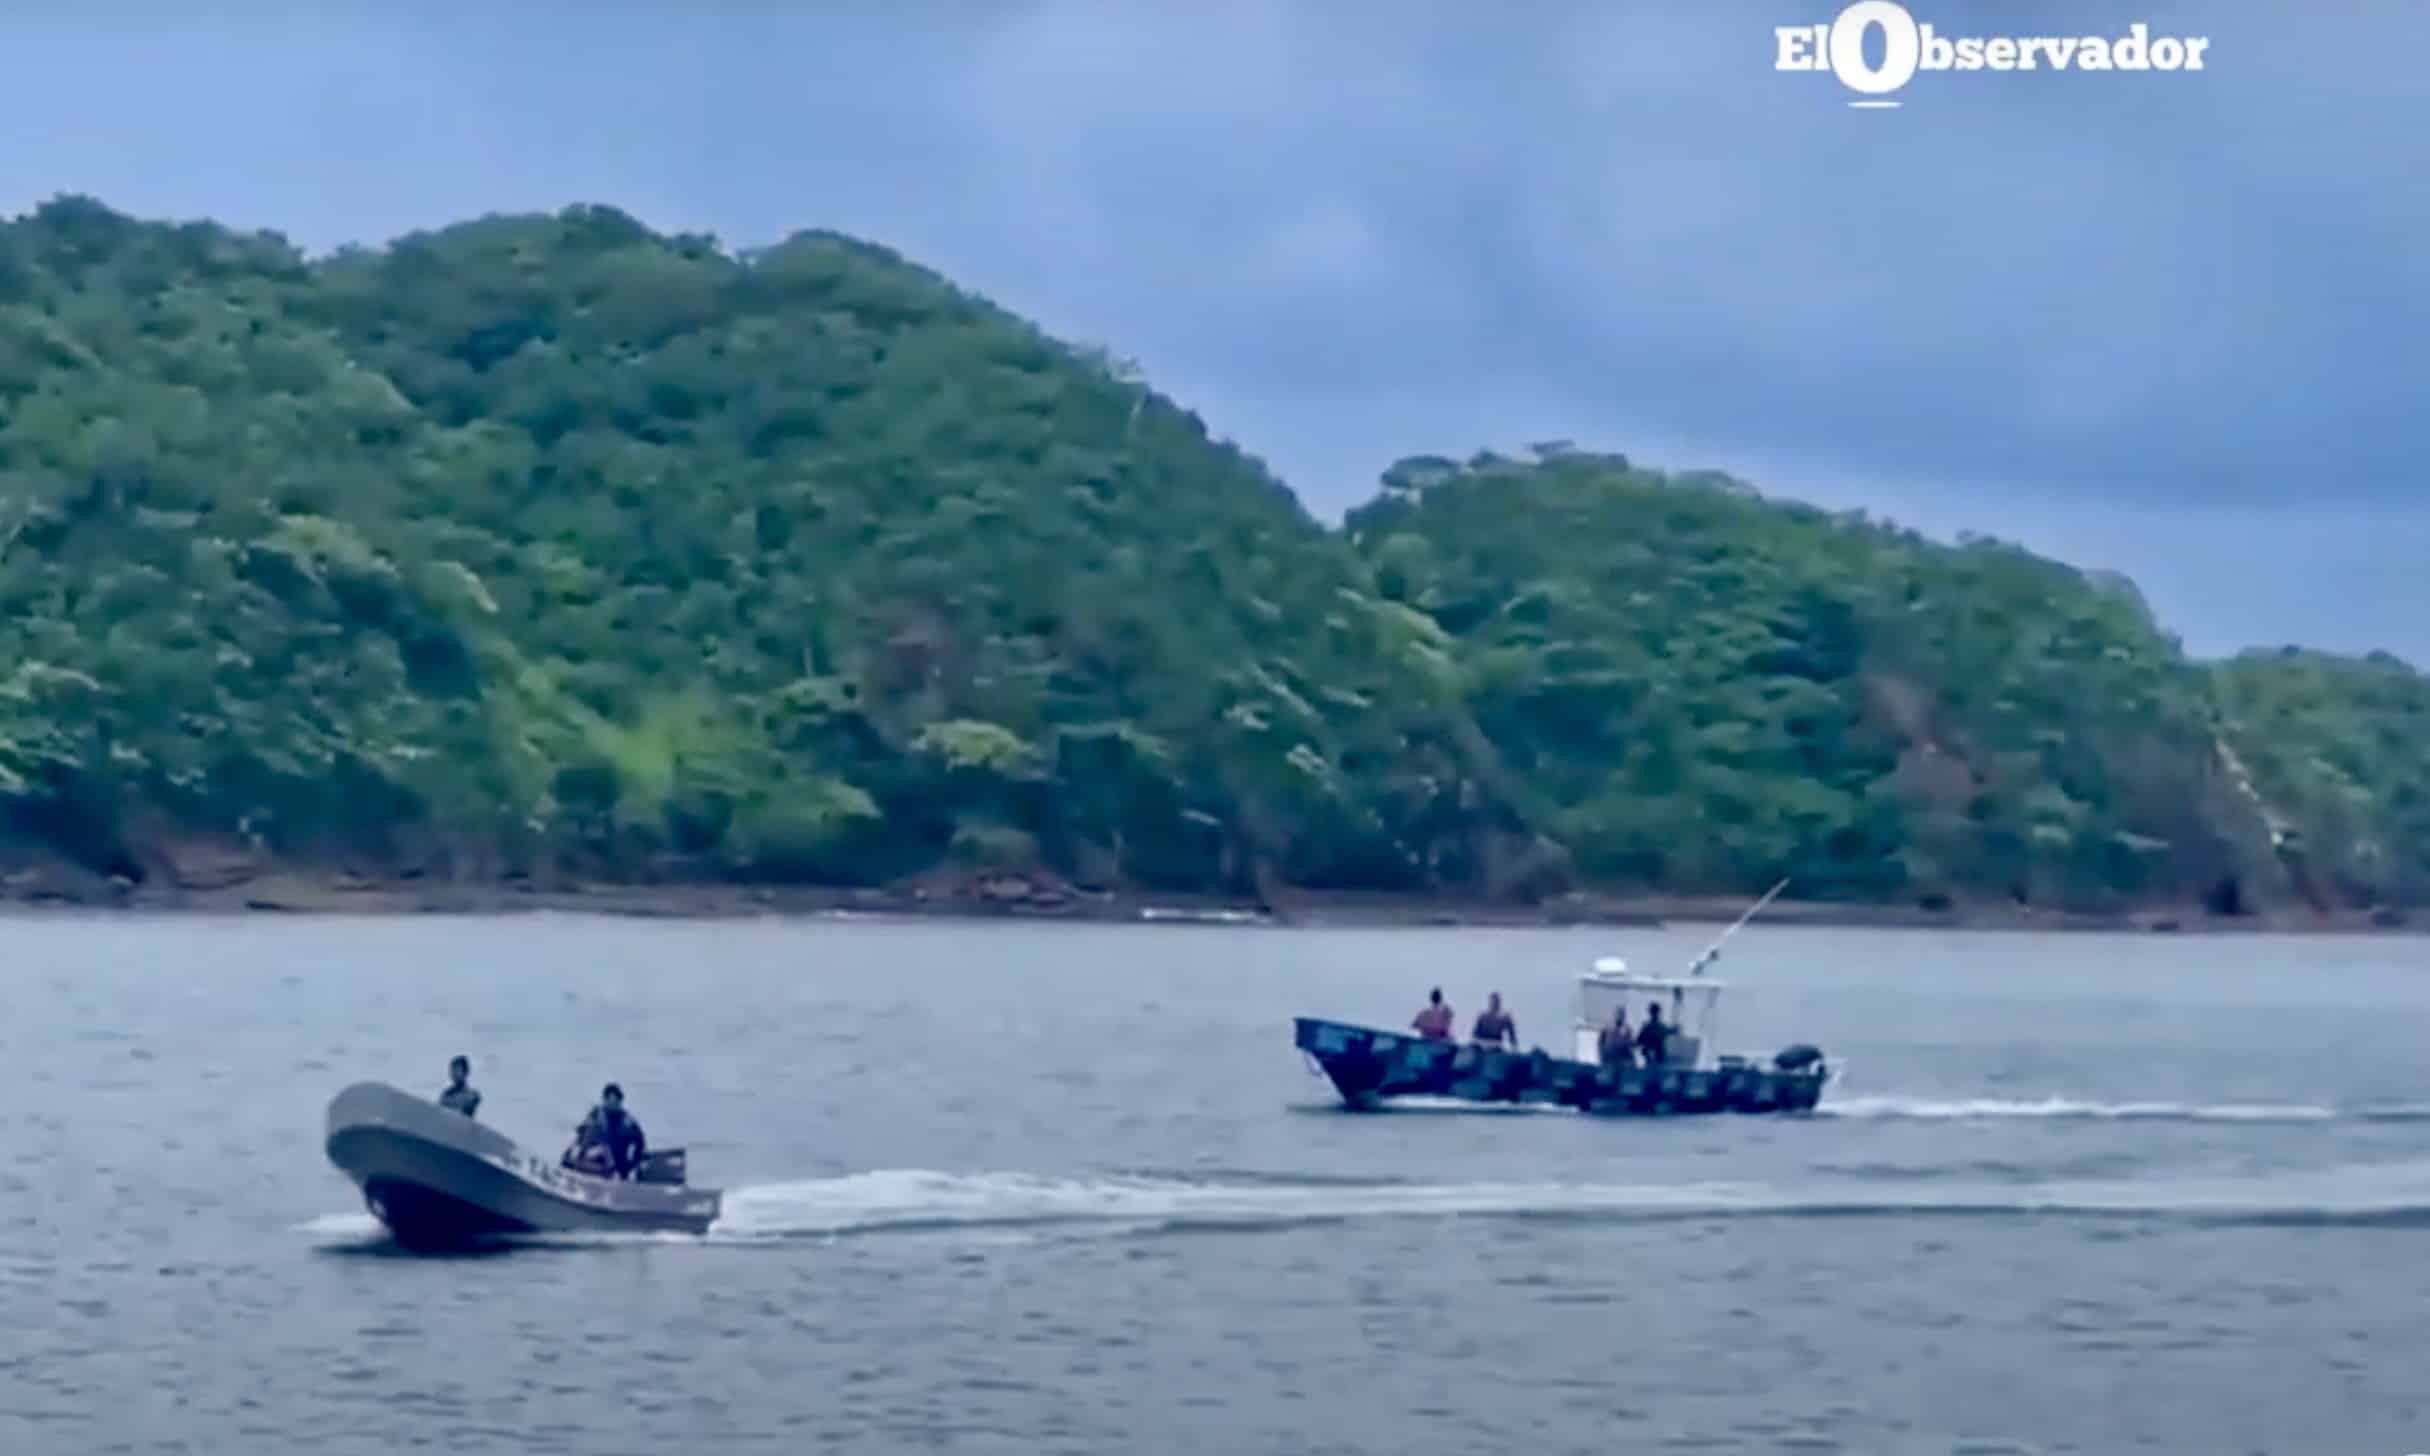 Cancillería descarta presencia permanente de embarcaciones militares nicas en aguas de Costa Rica